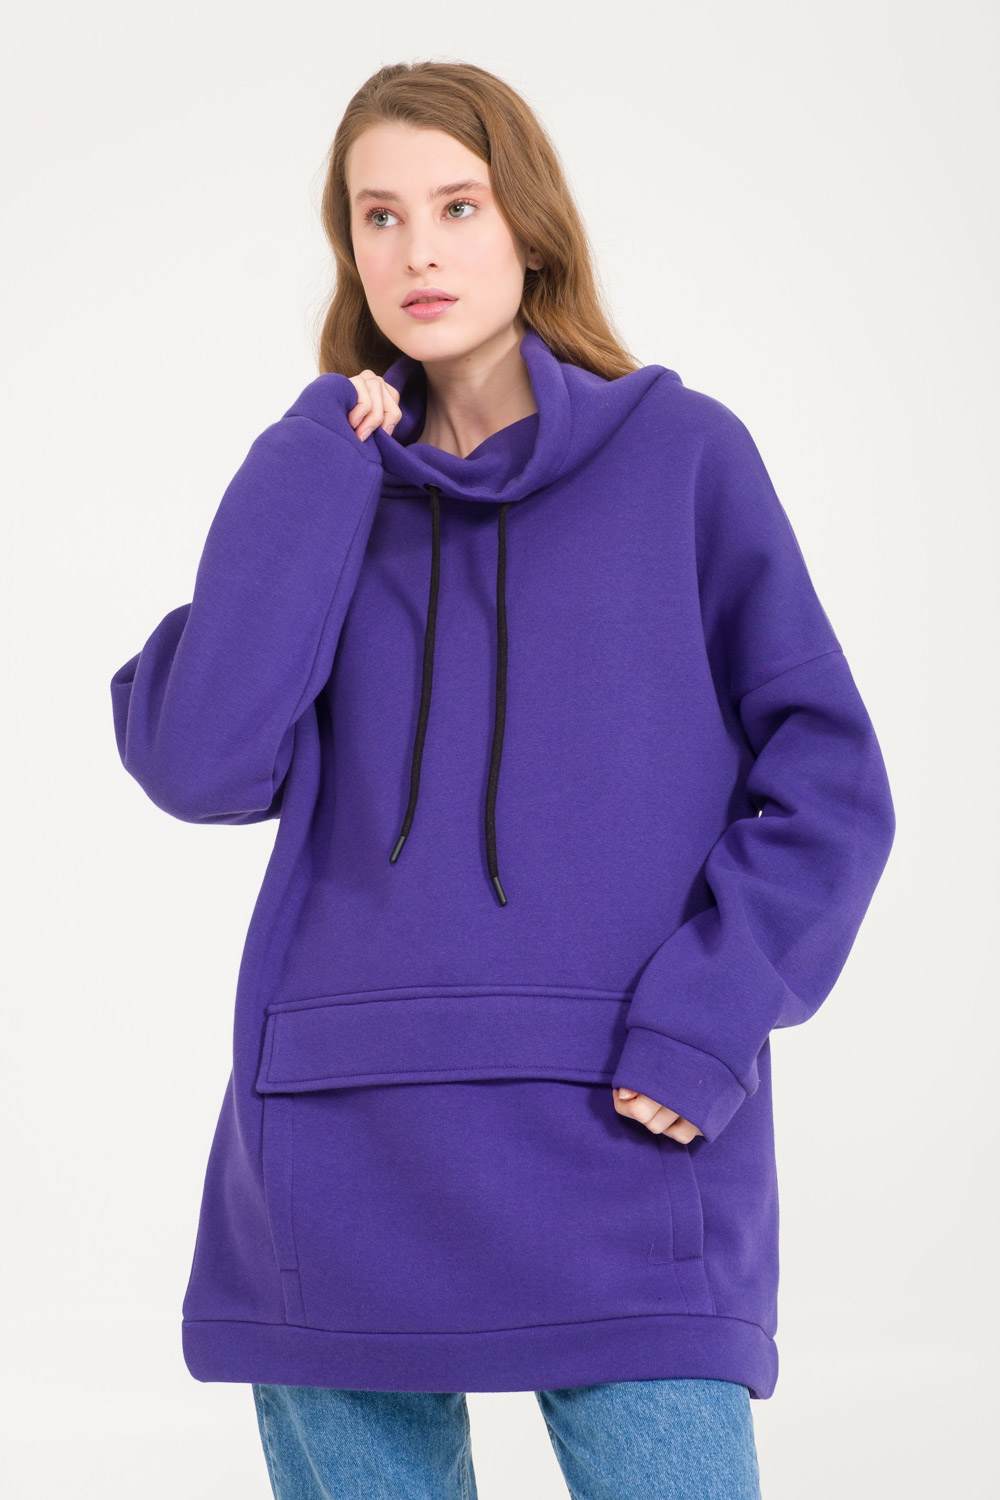 Turtleneck Purple Sweatshirt with Kangaroo Pocket